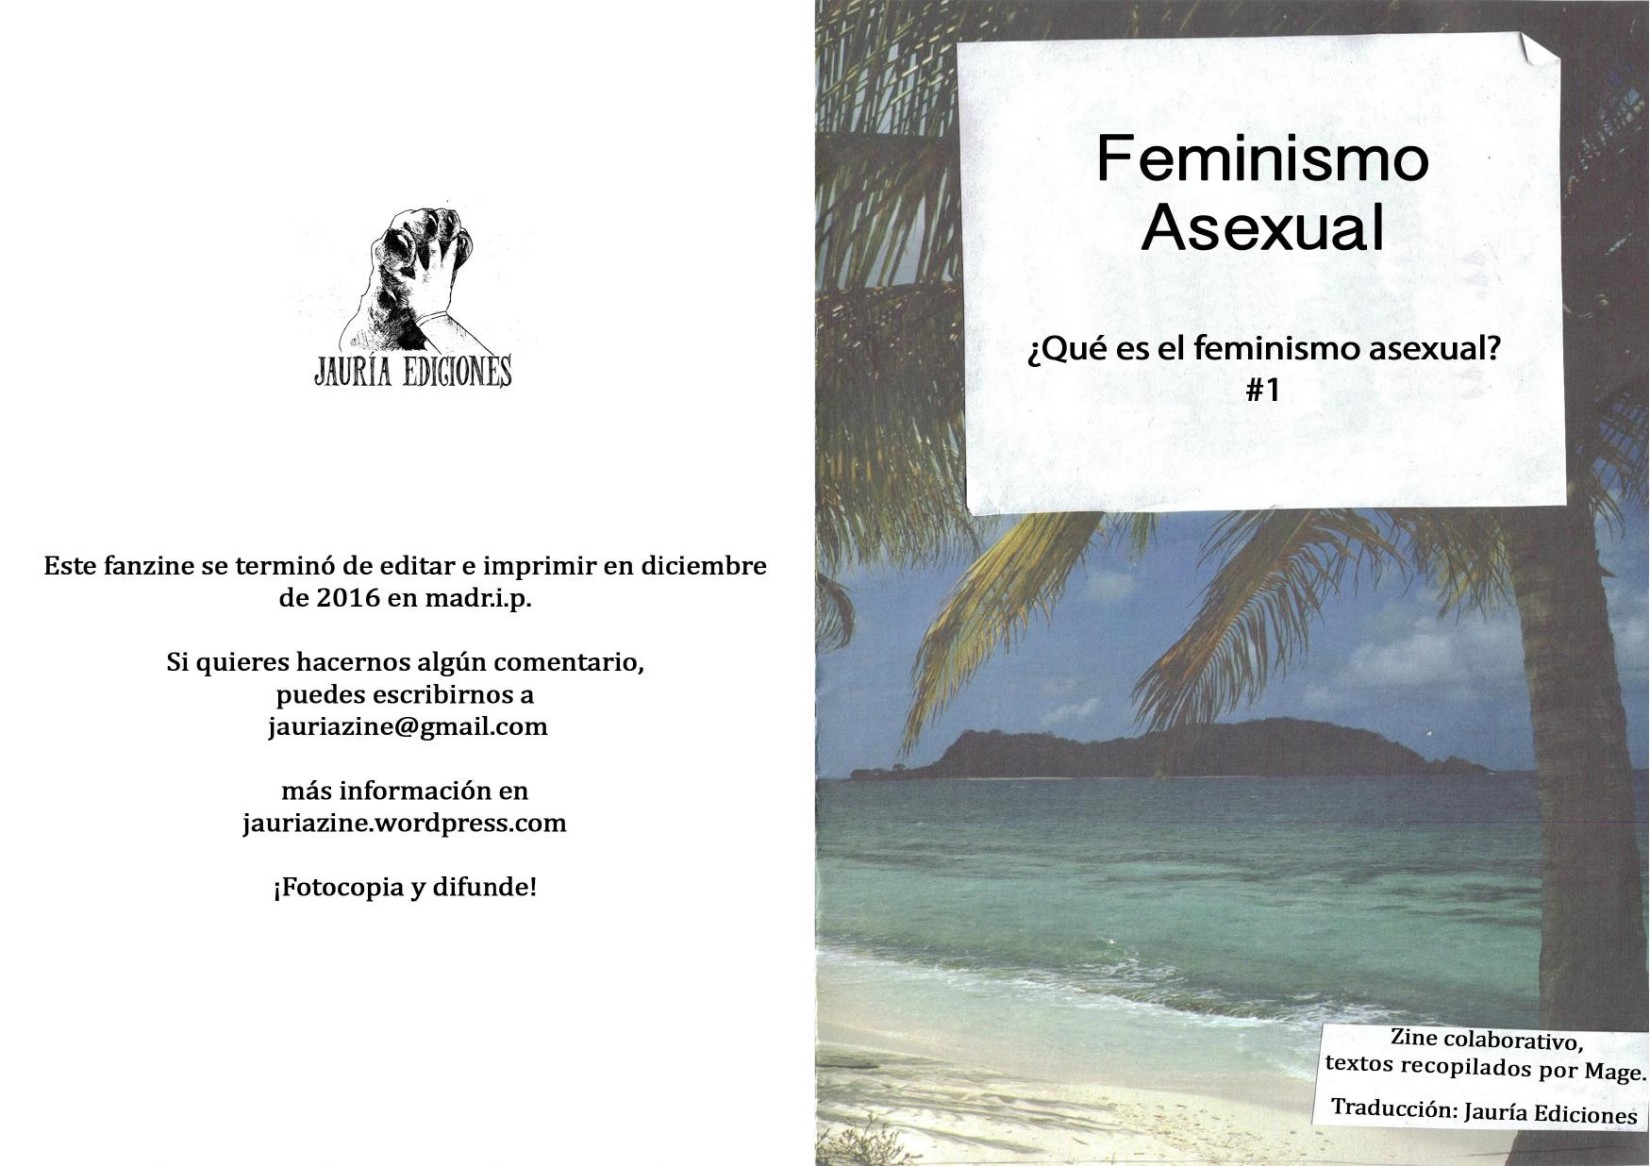 Feminismo asexual